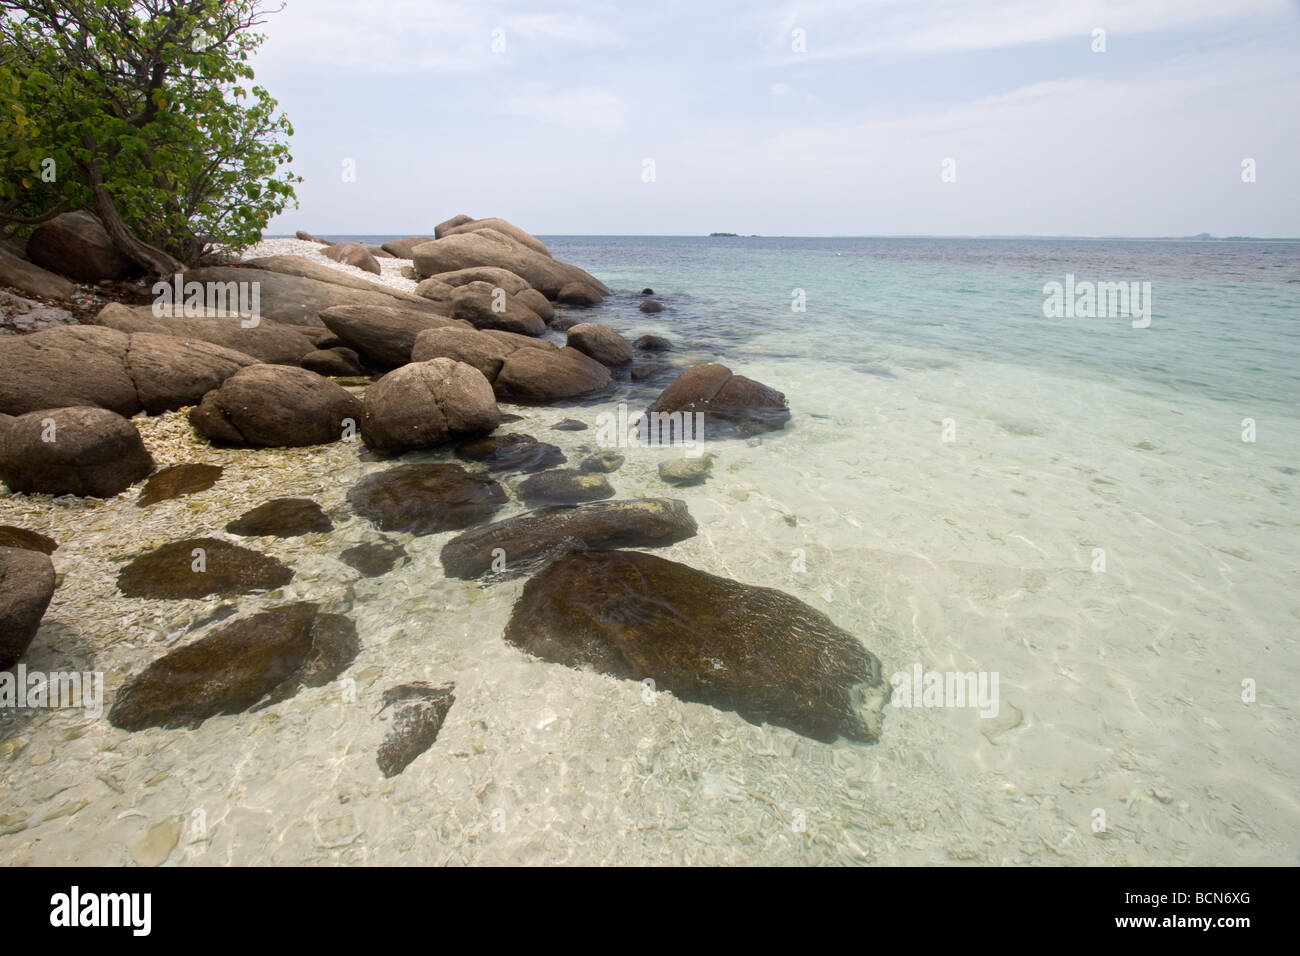 Pigeon Island Nilaveli Beach, Trincomalee, Sri Lanka - eine kleine idyllische Insel mit Rish Korallen Betten und exzellente Schnorcheln. Stockfoto